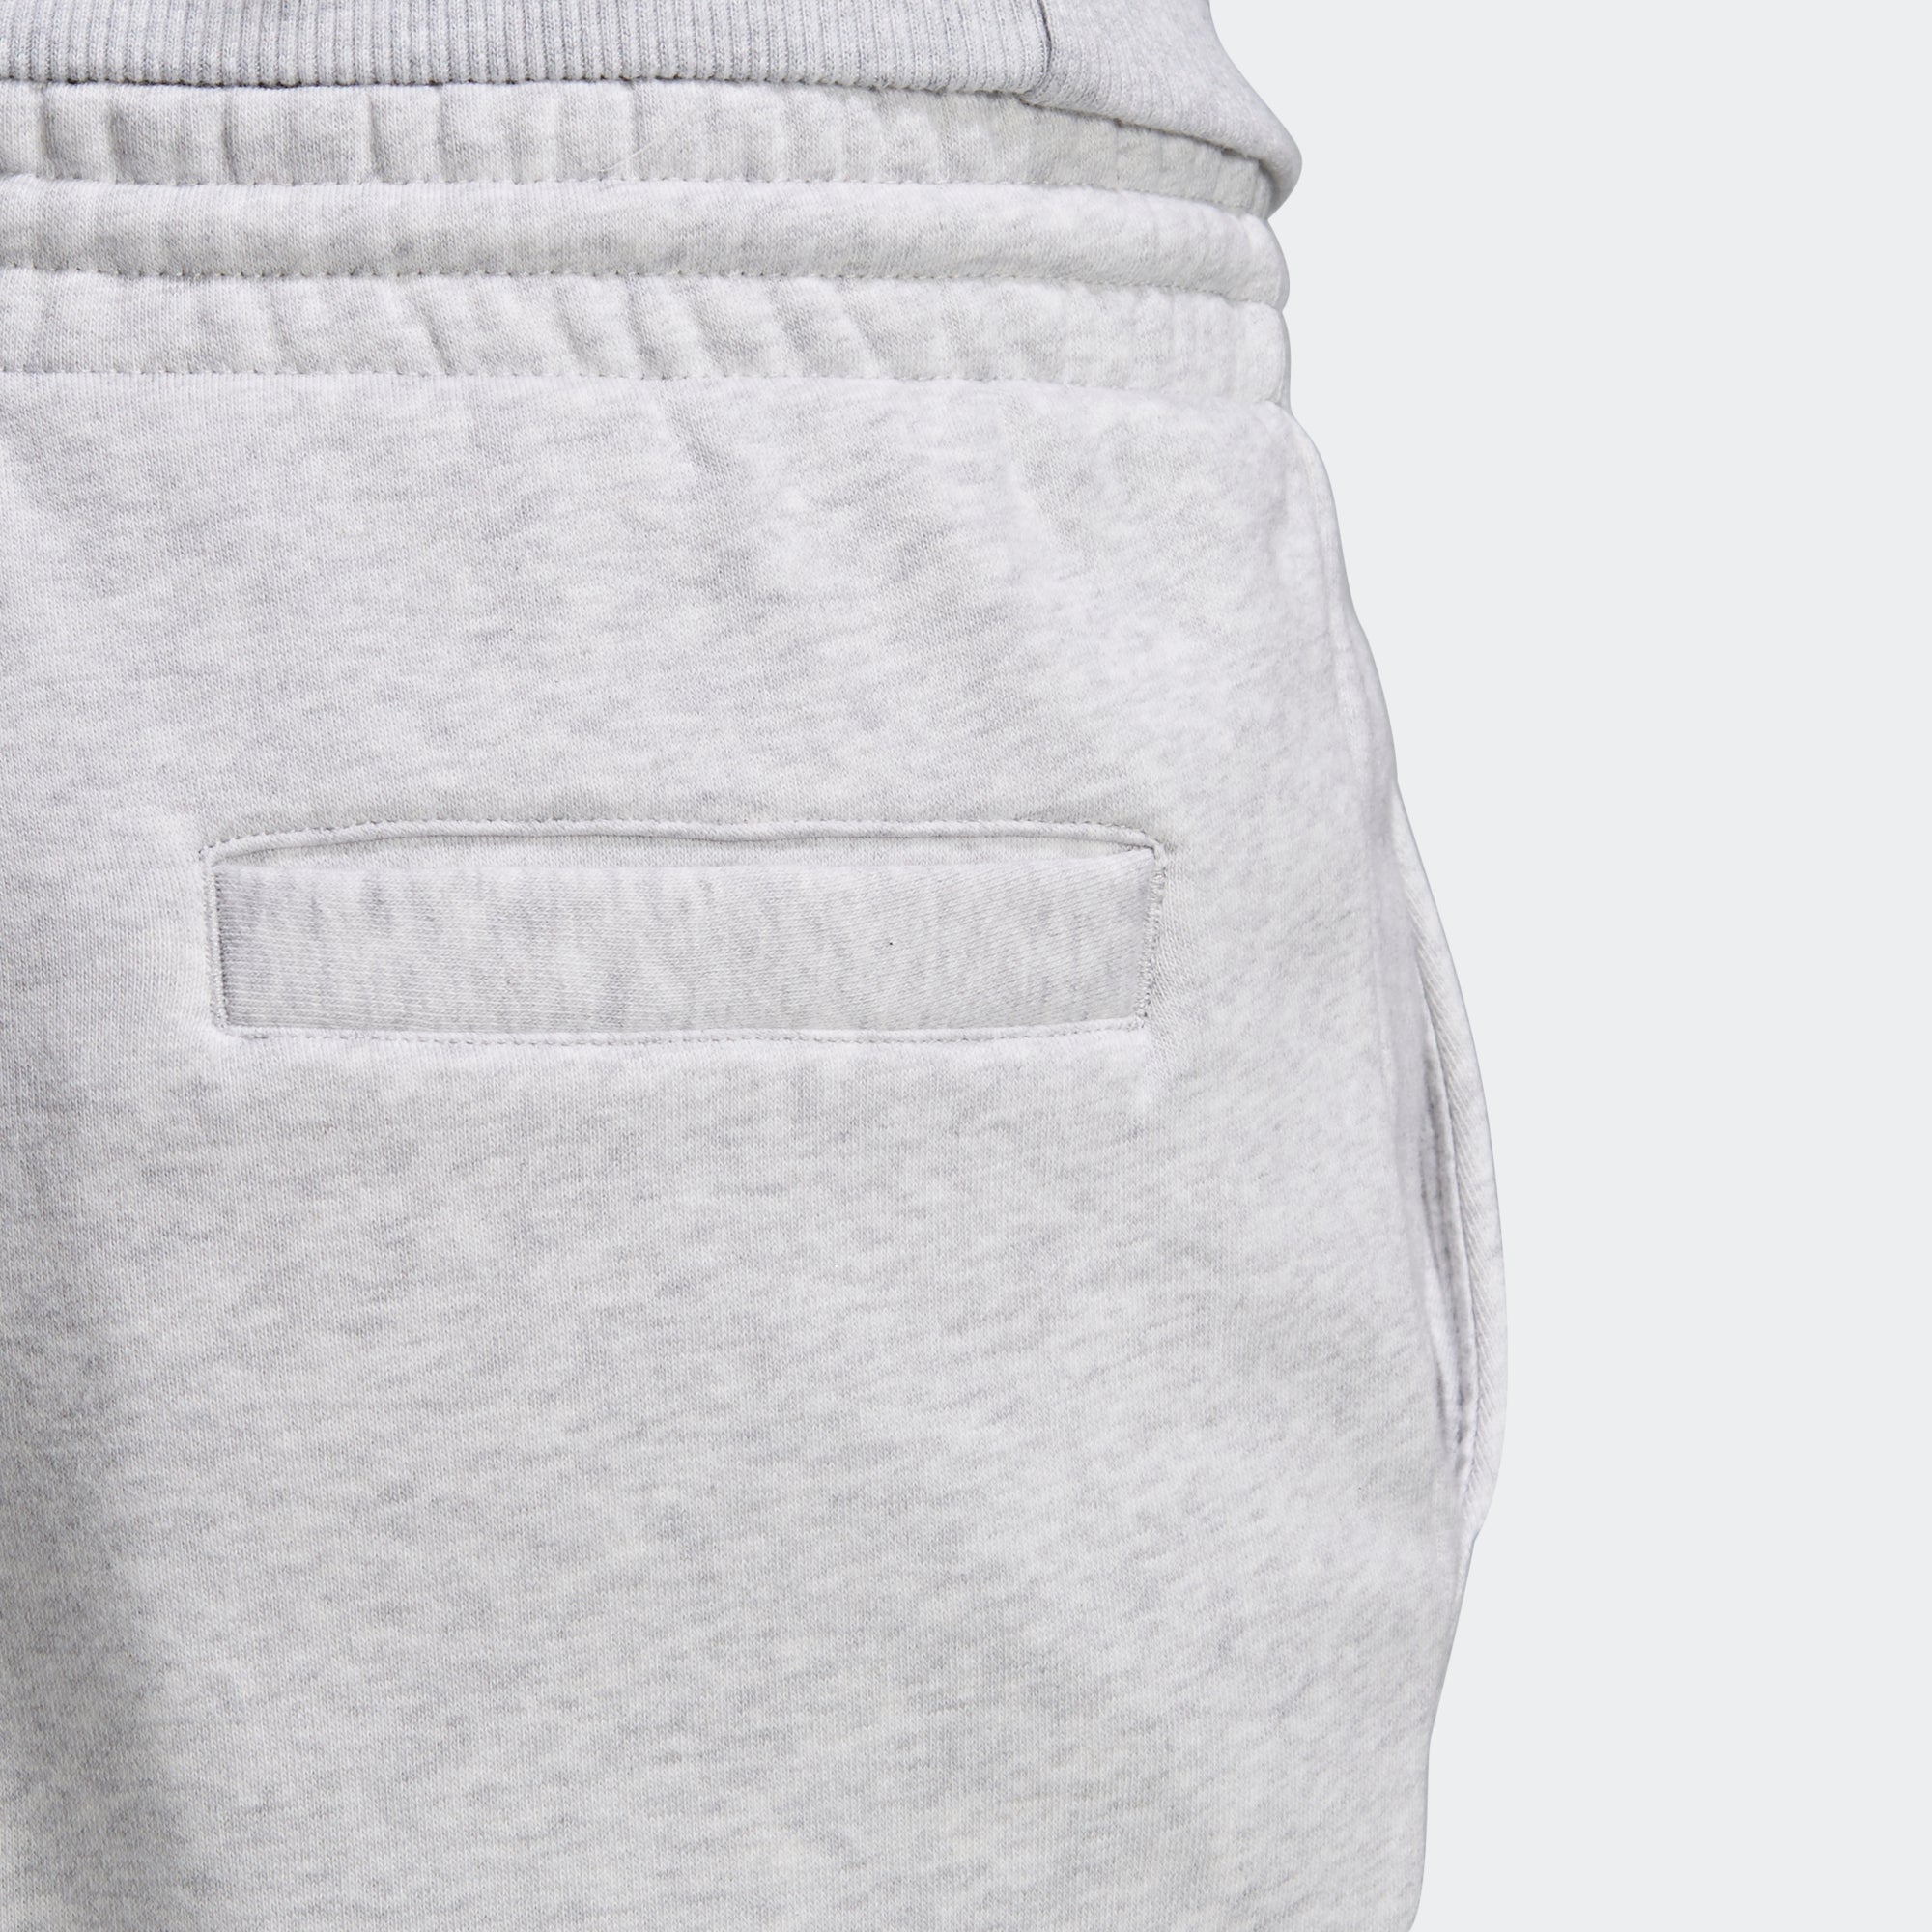 adidas originals coeeze sweat pant in grey heather